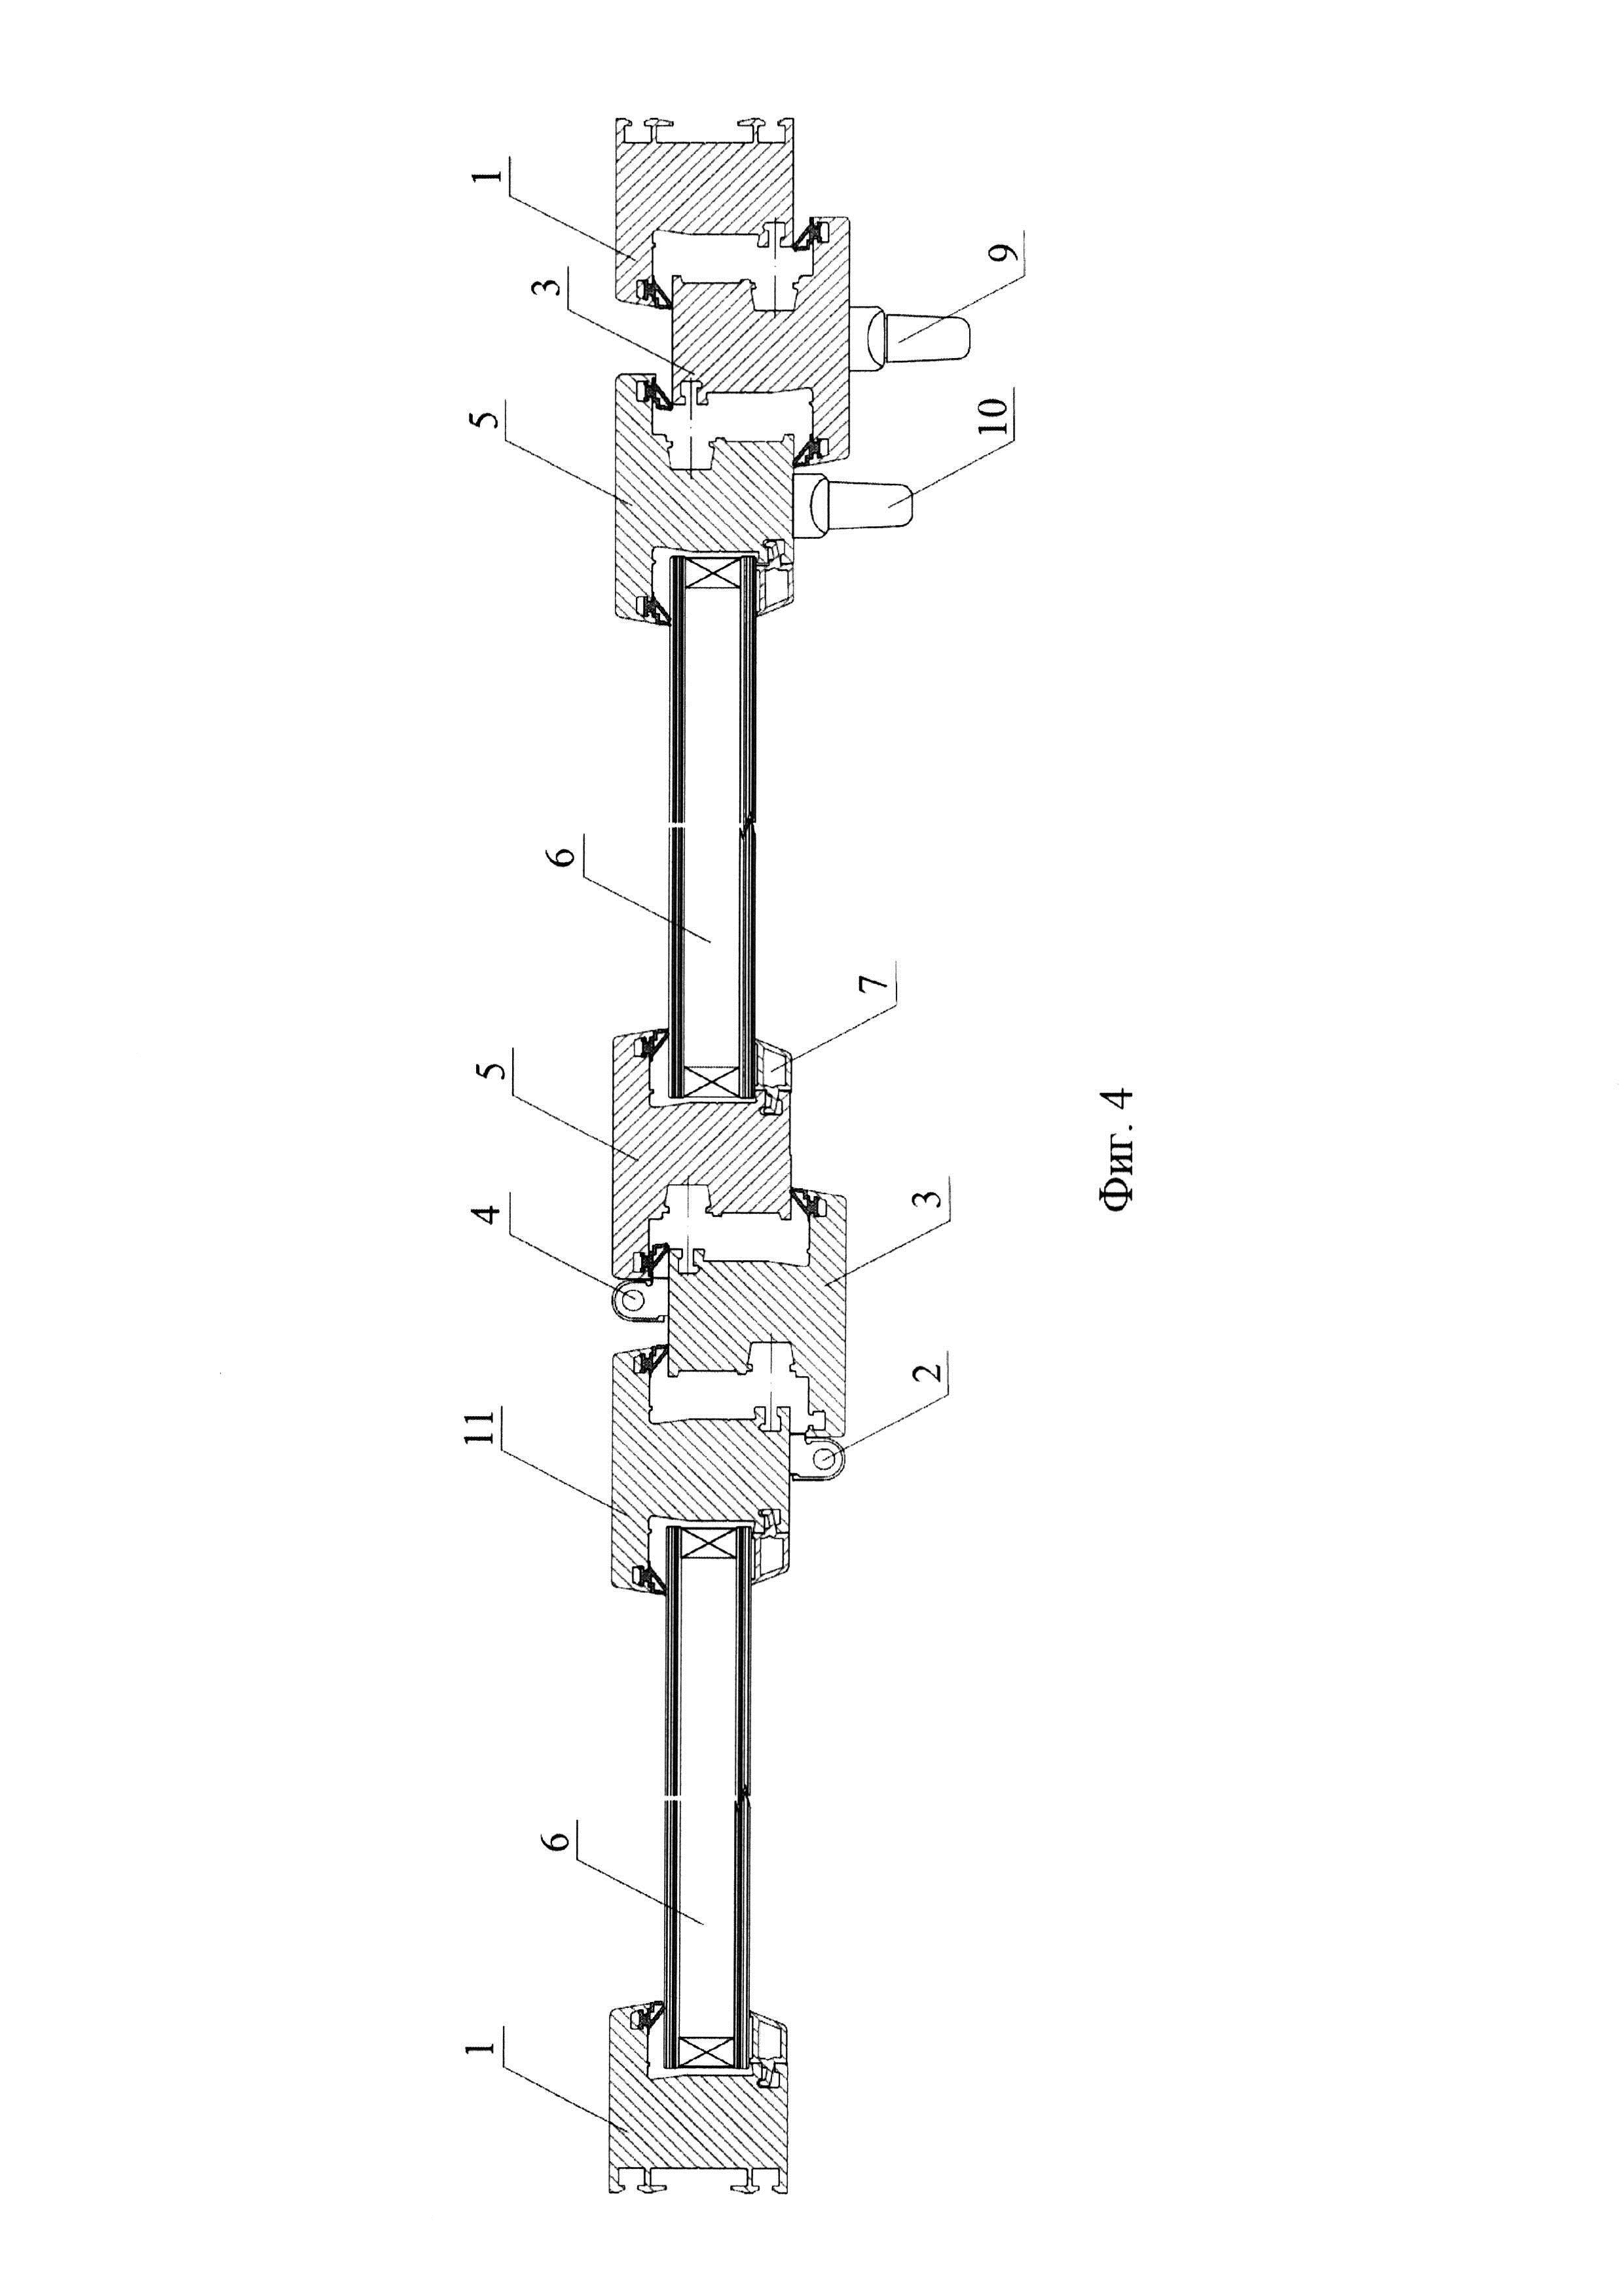 Светопрозрачная конструкция, обеспечивающая сброс избыточного давления внутри помещения (варианты)